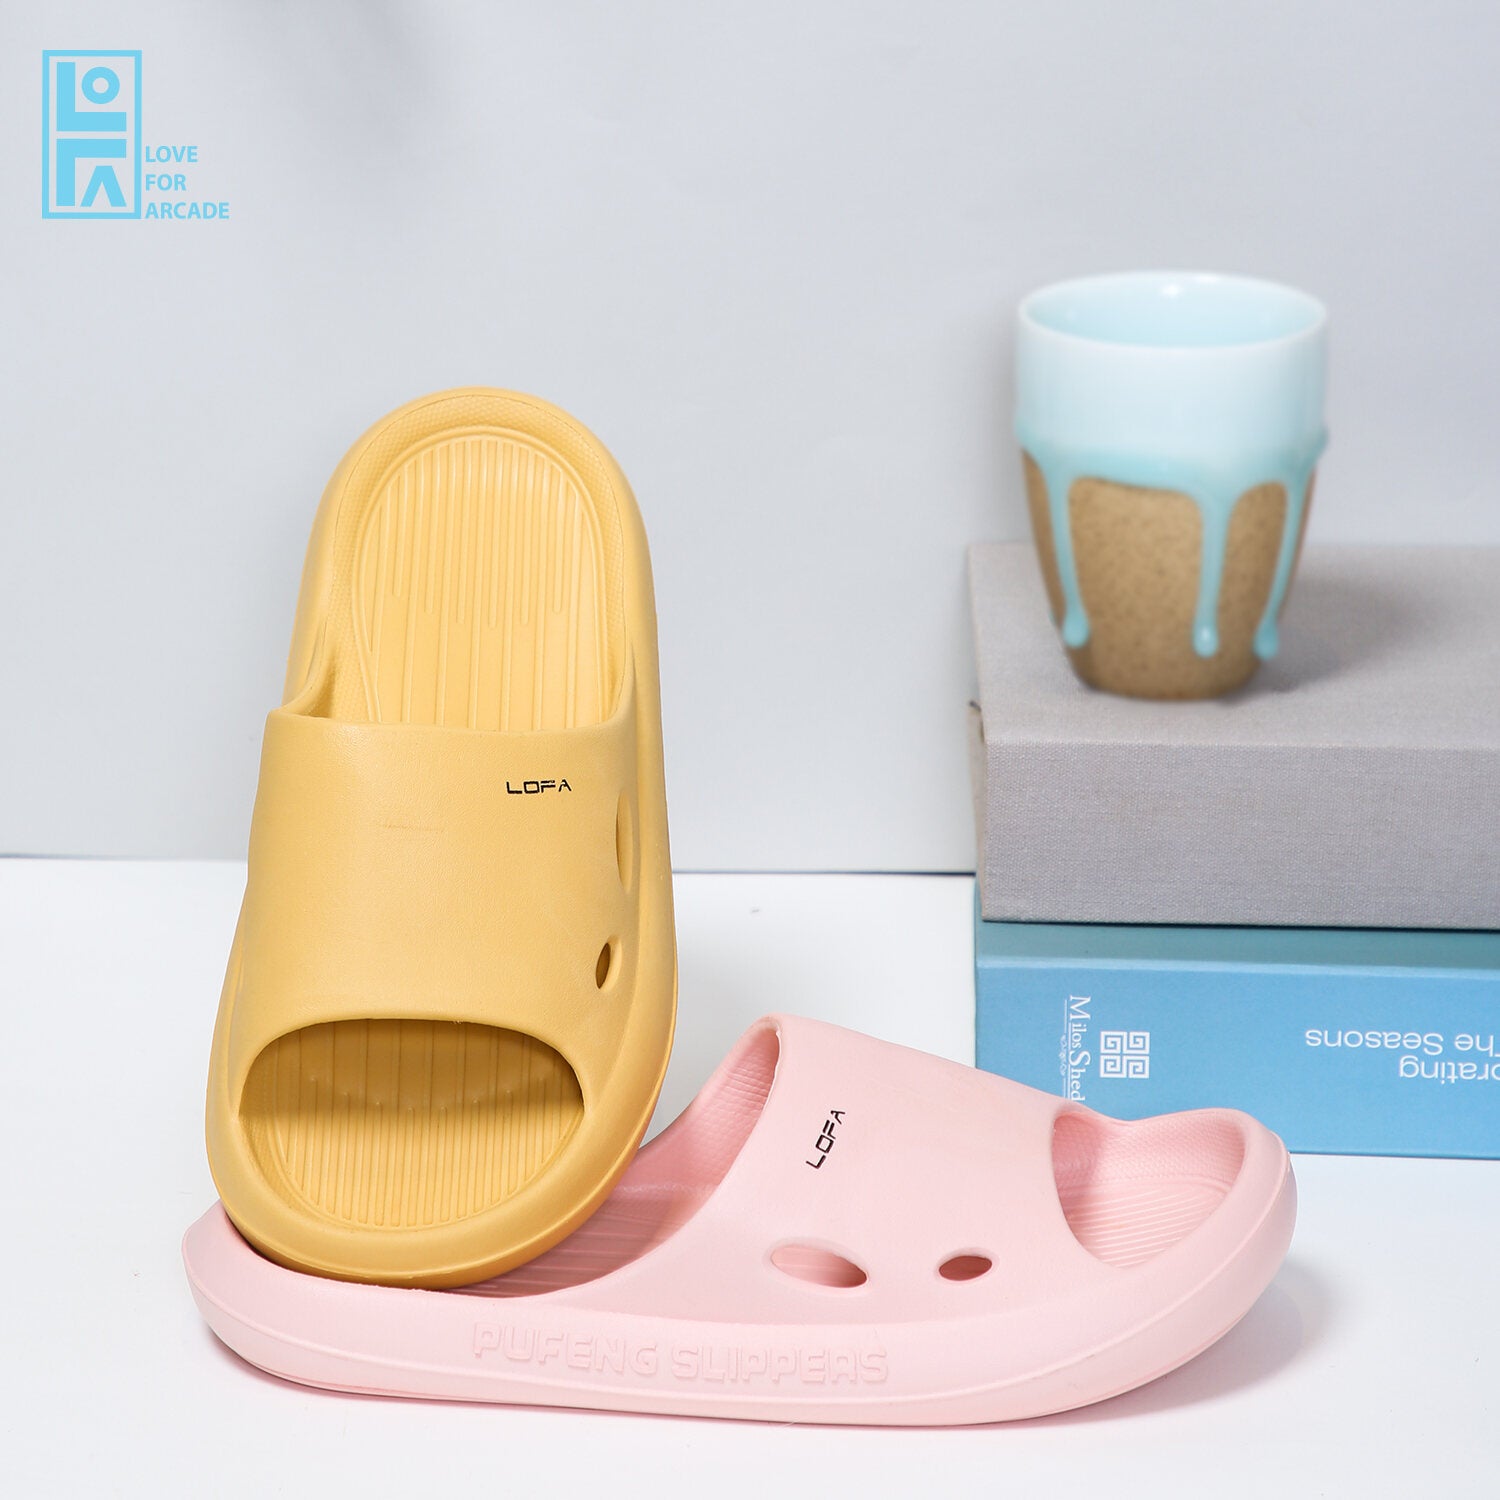 Comfort Flip Flop/Slipper for Women - Buy Online Today! – LOFA